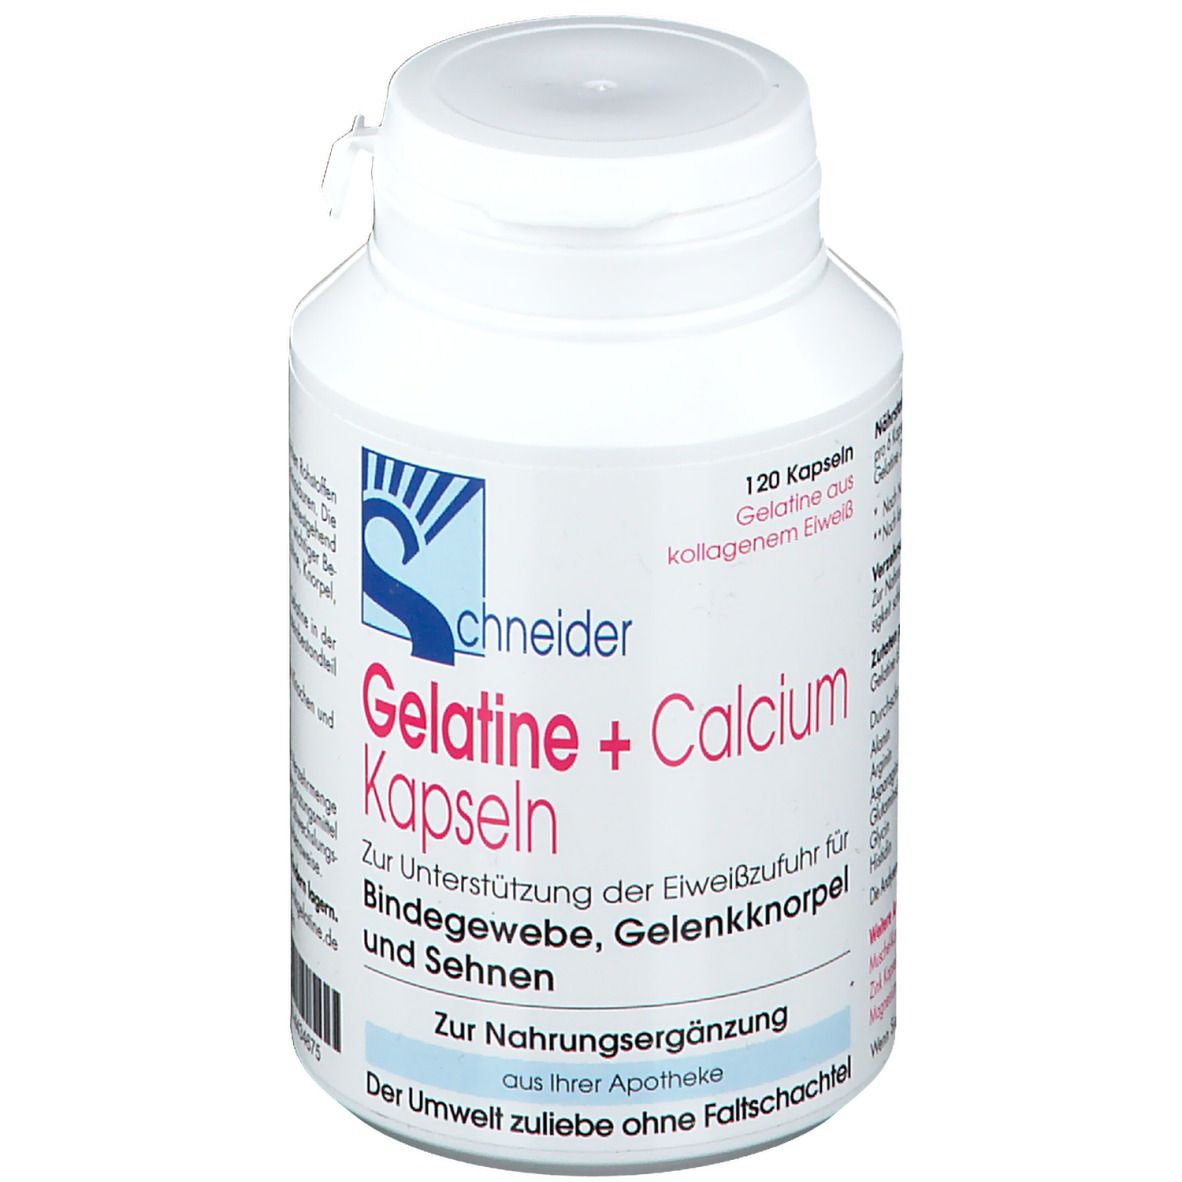 Gelatine + Calcium